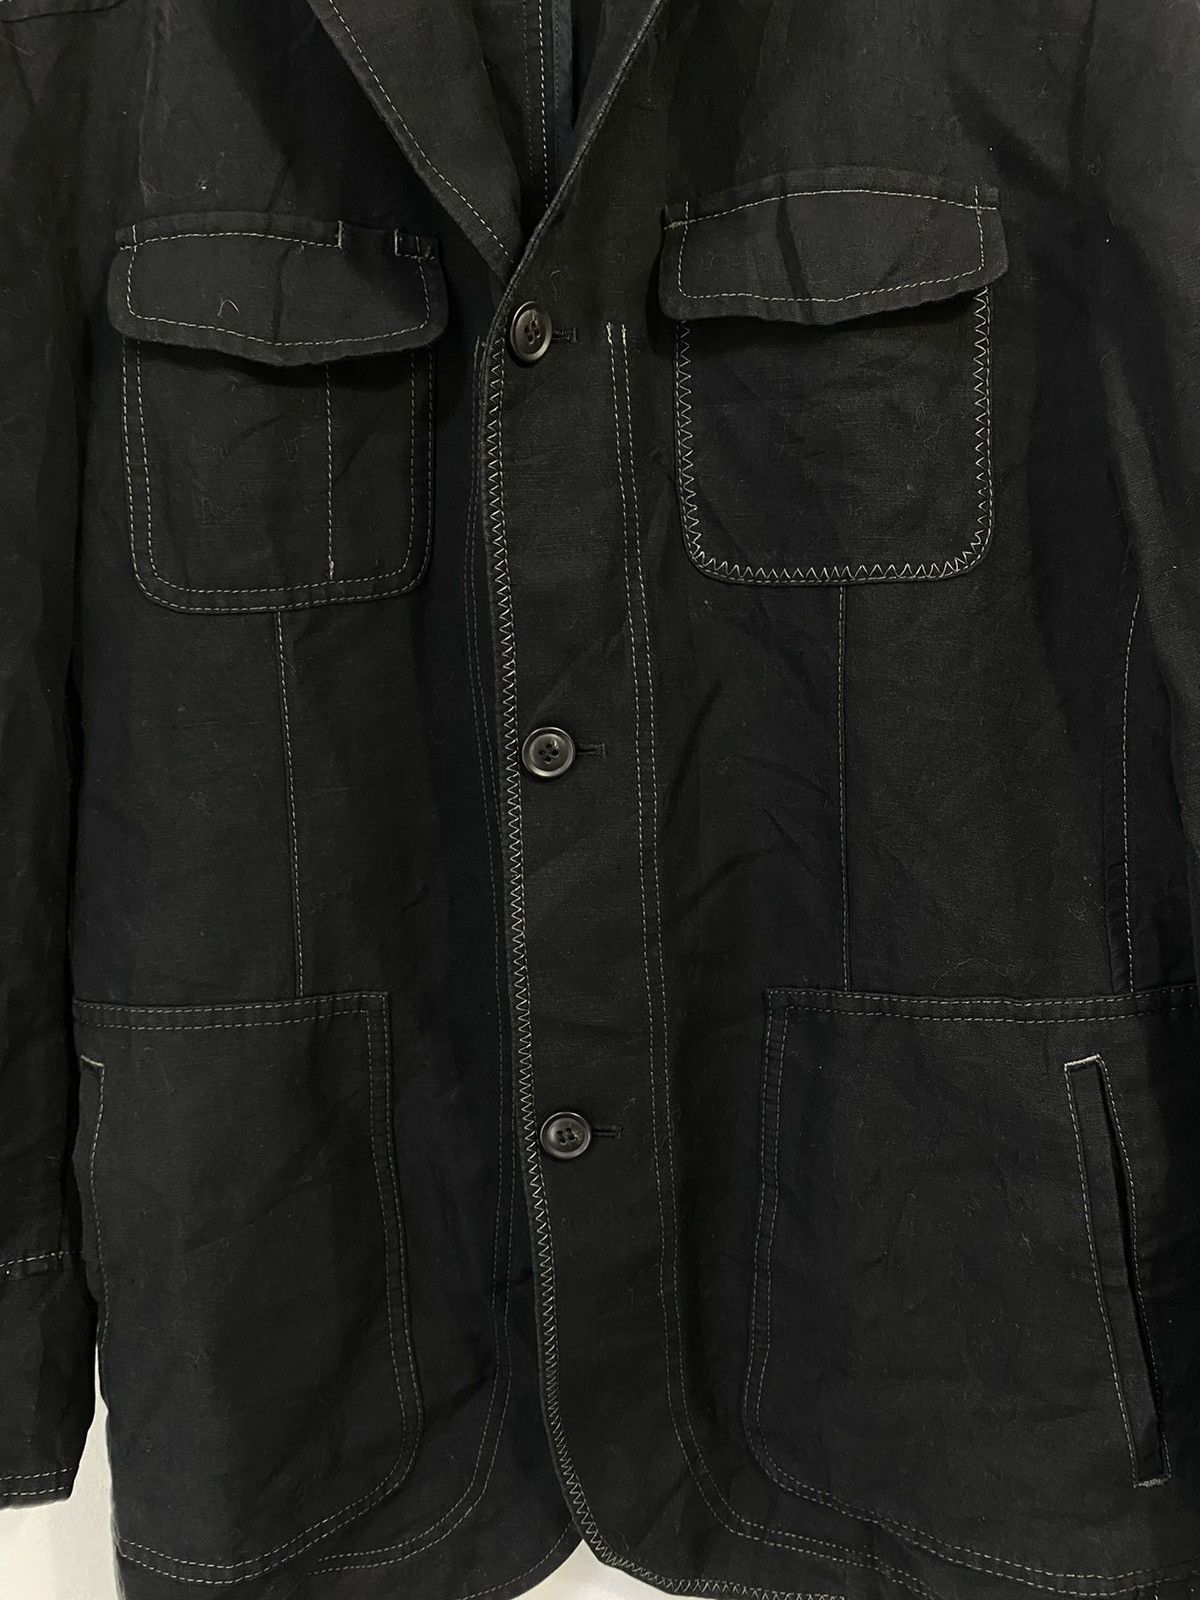 Lanvin Linen Jacket 4 Pocket Design Made in Japan - 3